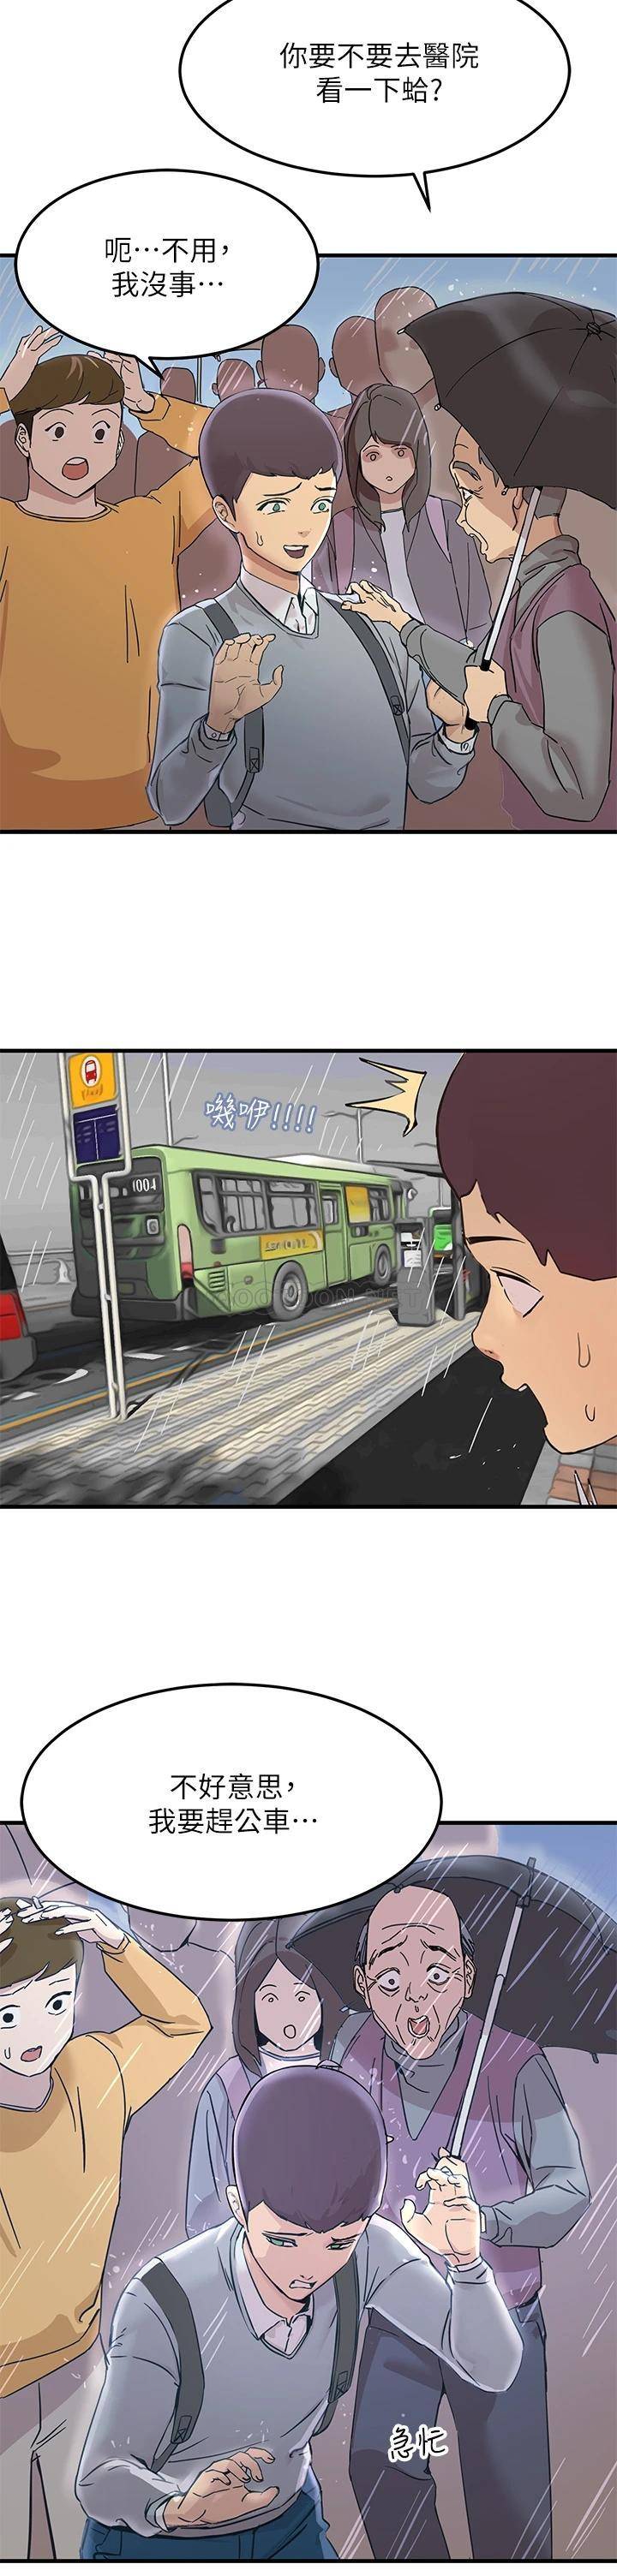 韩国污漫画 觸電大師 第1话 一览无遗的性敏感带 28